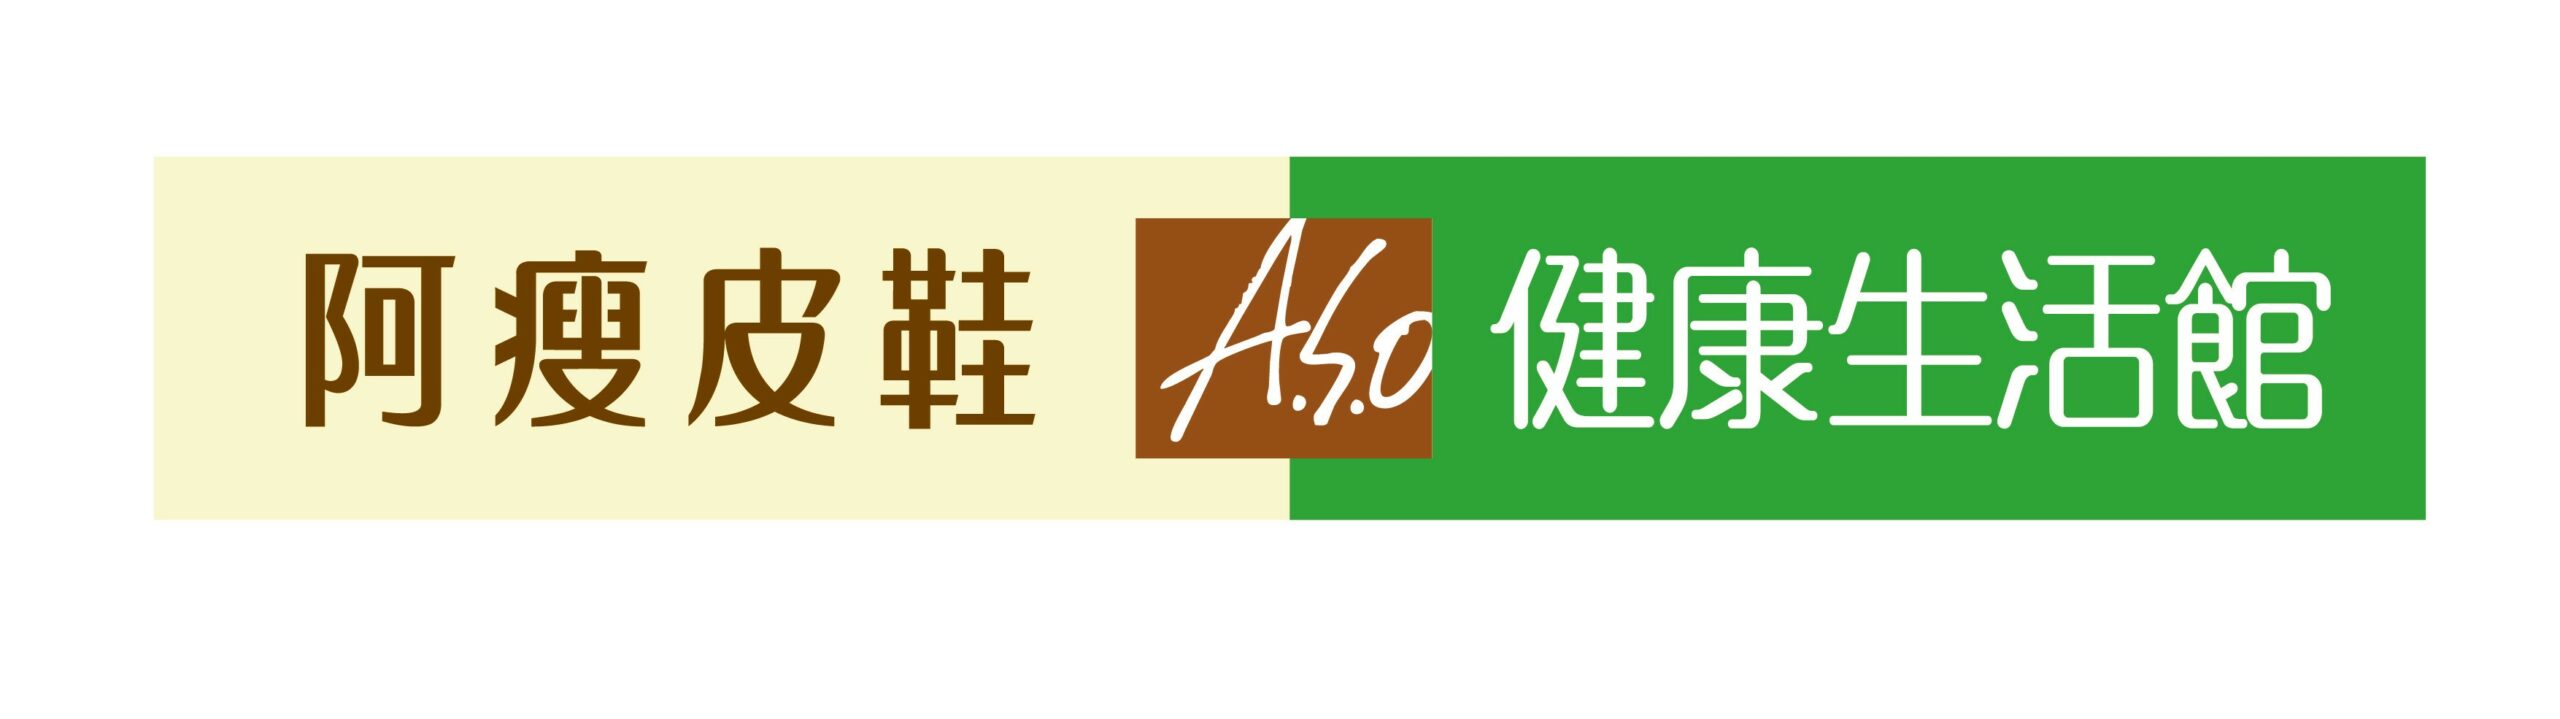 2_ASO logo